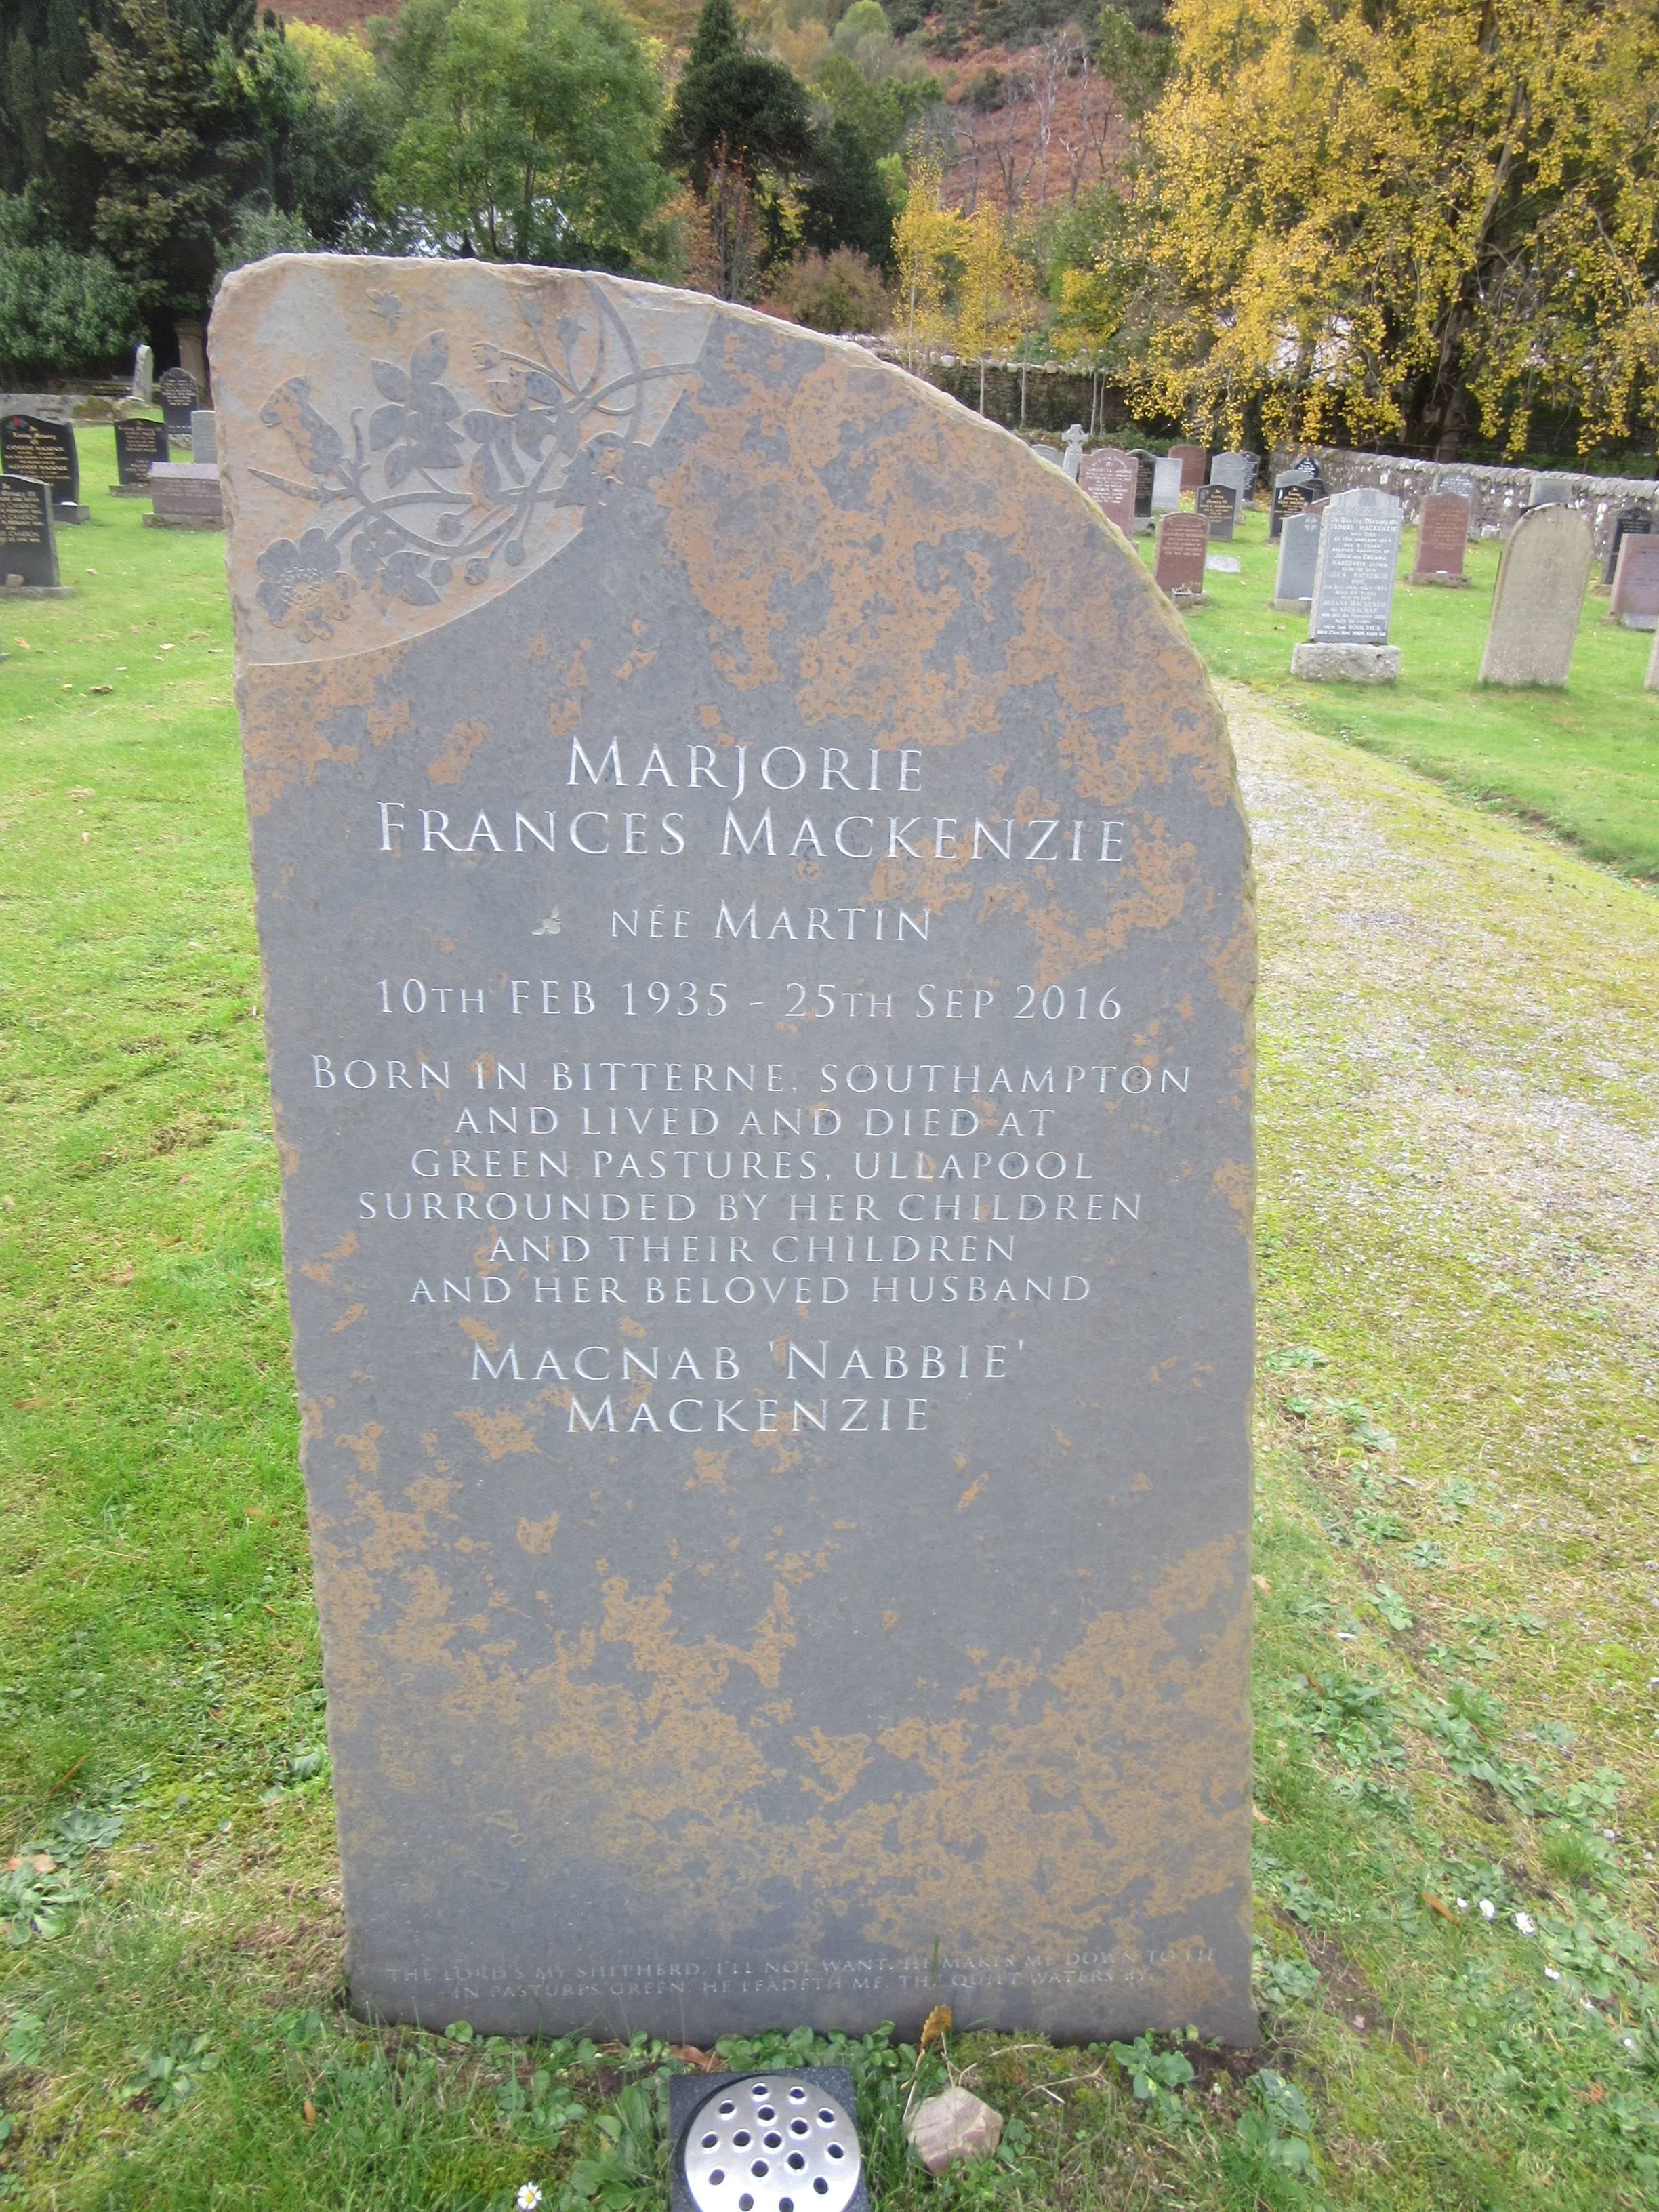 N4 - Marjorie Frances Mackenzie